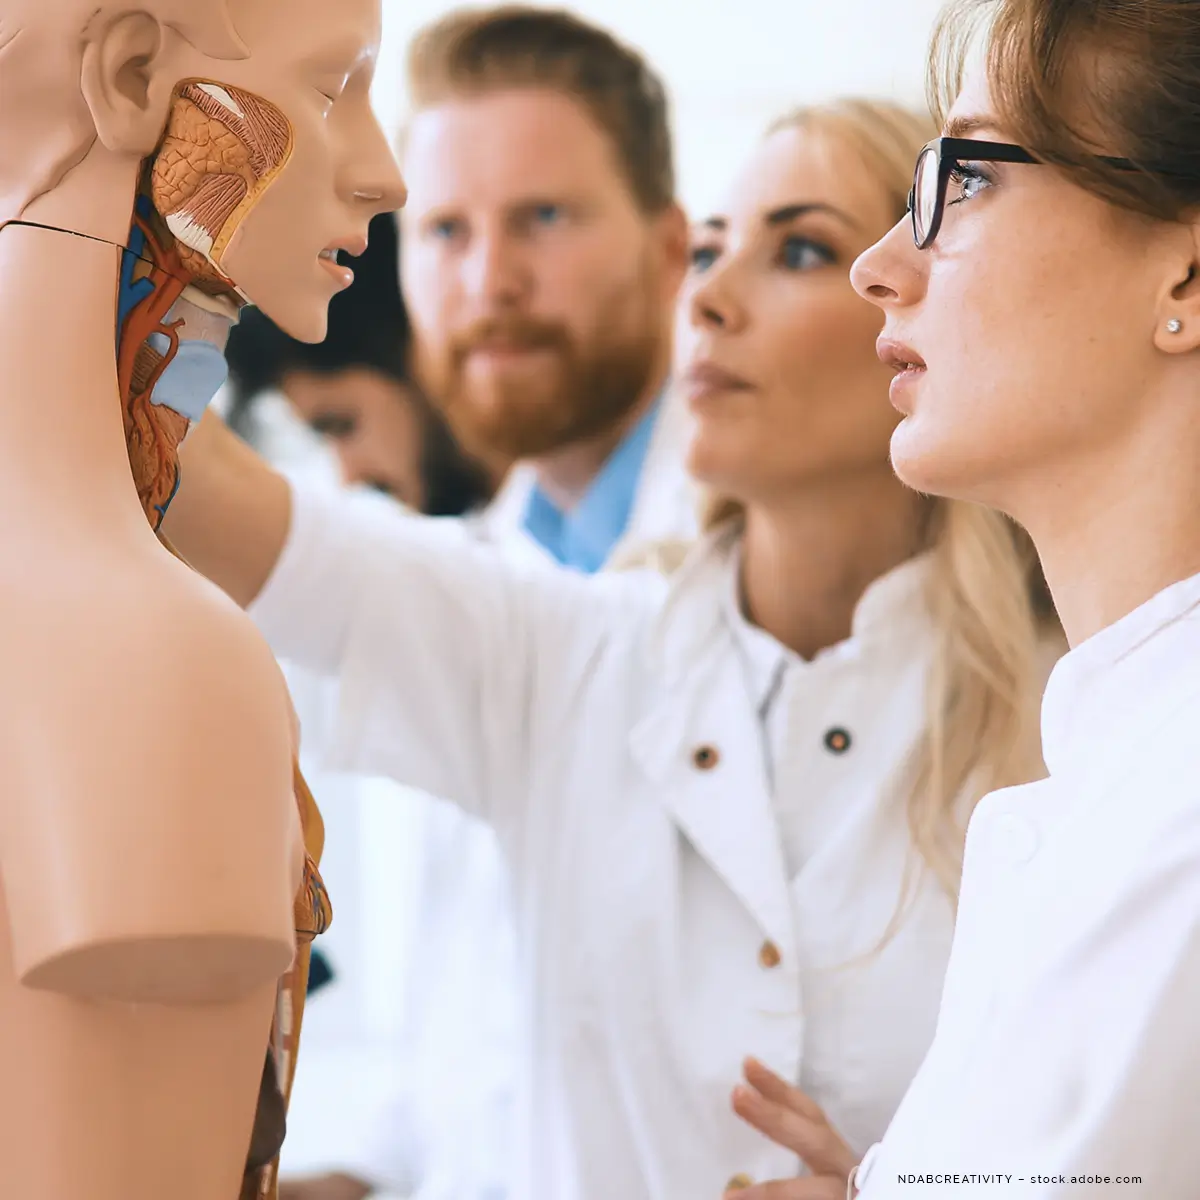 Drei angehende Mediziner schauen sich die Anatomie an einer Puppe an.